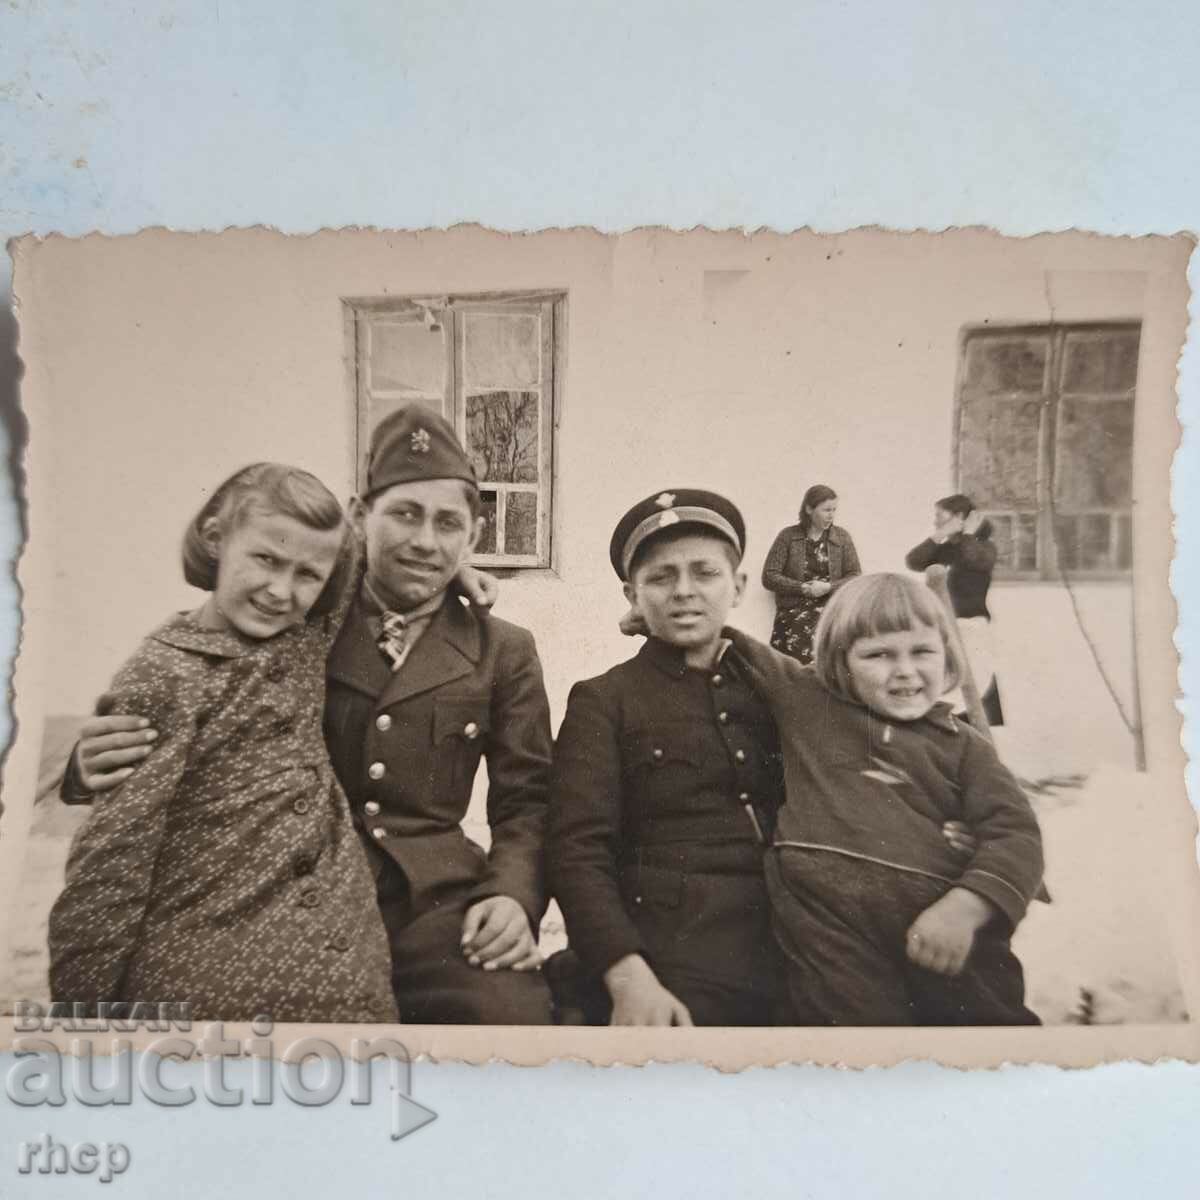 Chestnut old photo in uniform World War II